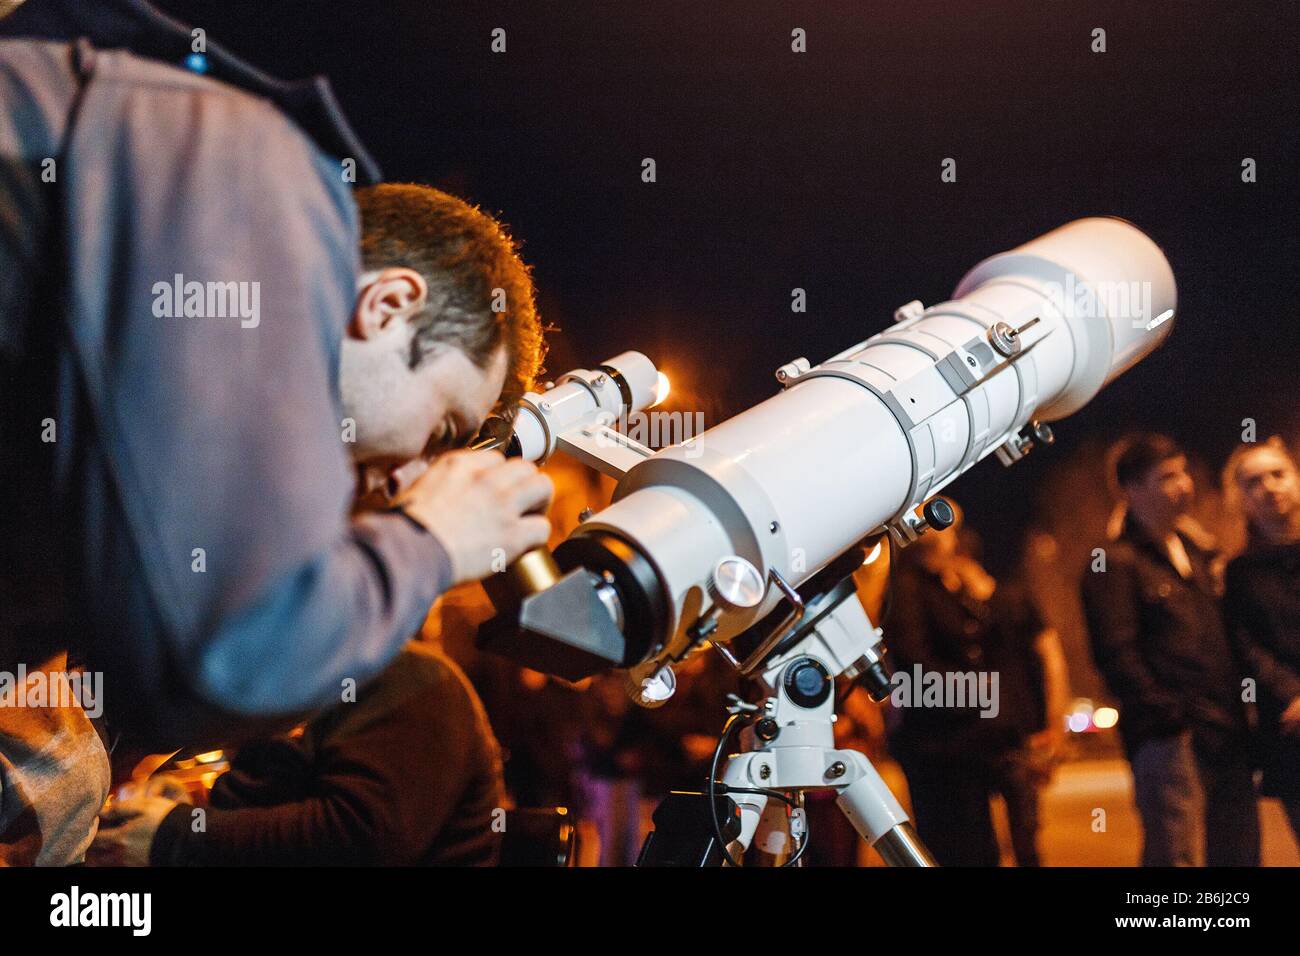 29 APRILE 2017, UFA, RUSSIA: Le persone vengono a guardare le stelle e la luna in un telescopio professionale montato da astronomi amatoriali locali Foto Stock